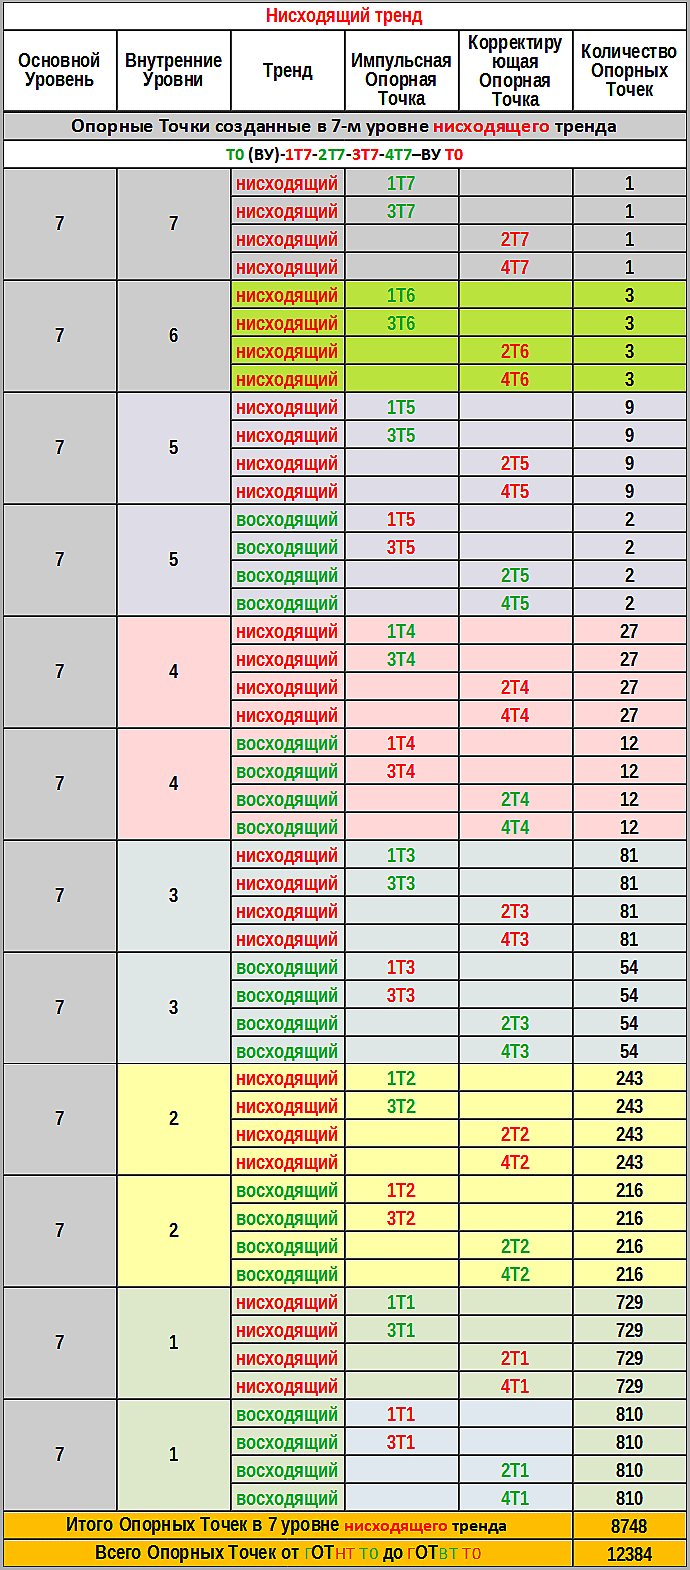 Таблица №15  Опорные Точки, созданные в 7-м уровне нисходящего тренда